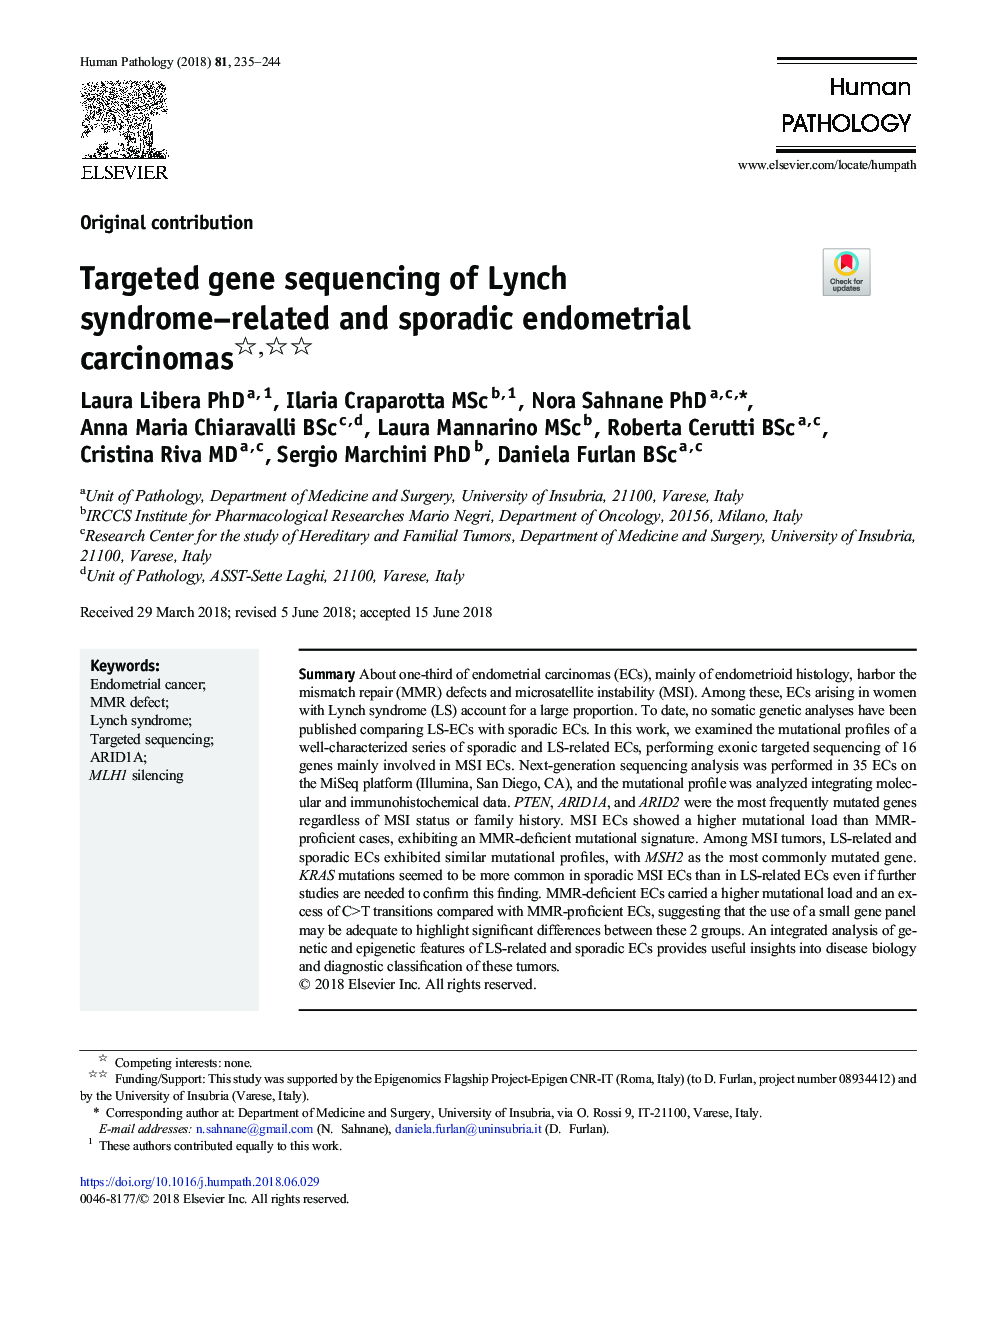 تعیین توالی ژن هدفمند از کارسینومهای آندومتر مرتبط با سندرم لینچ و پراکنده